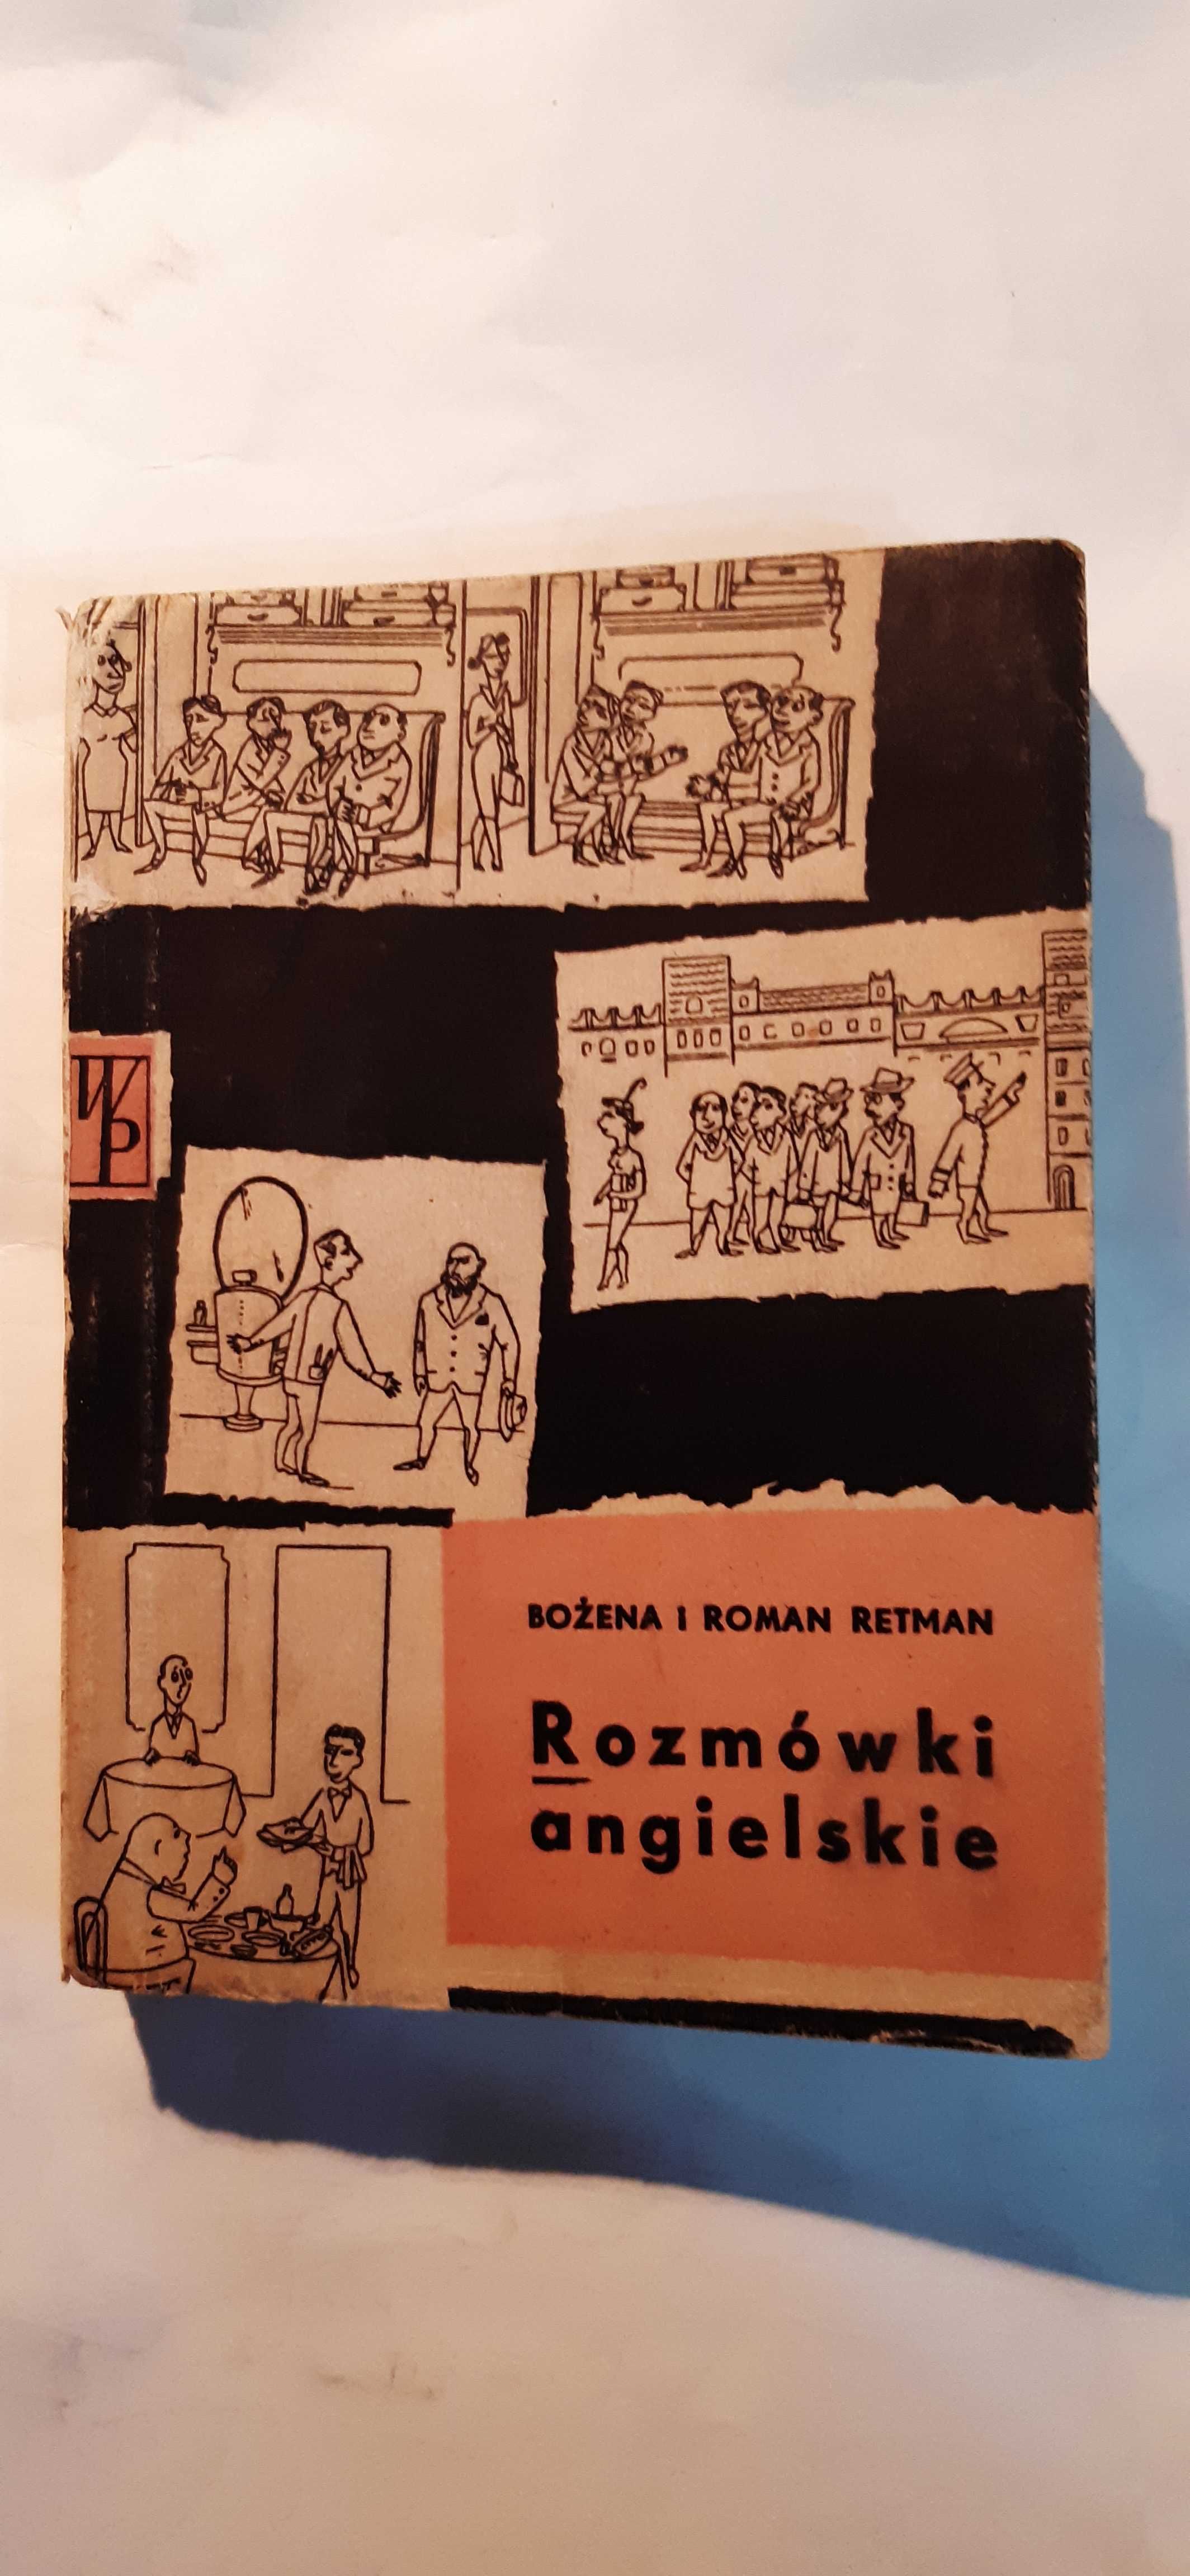 stare rozmówki angielskie, Bożena i Roman Retman, 1958r.